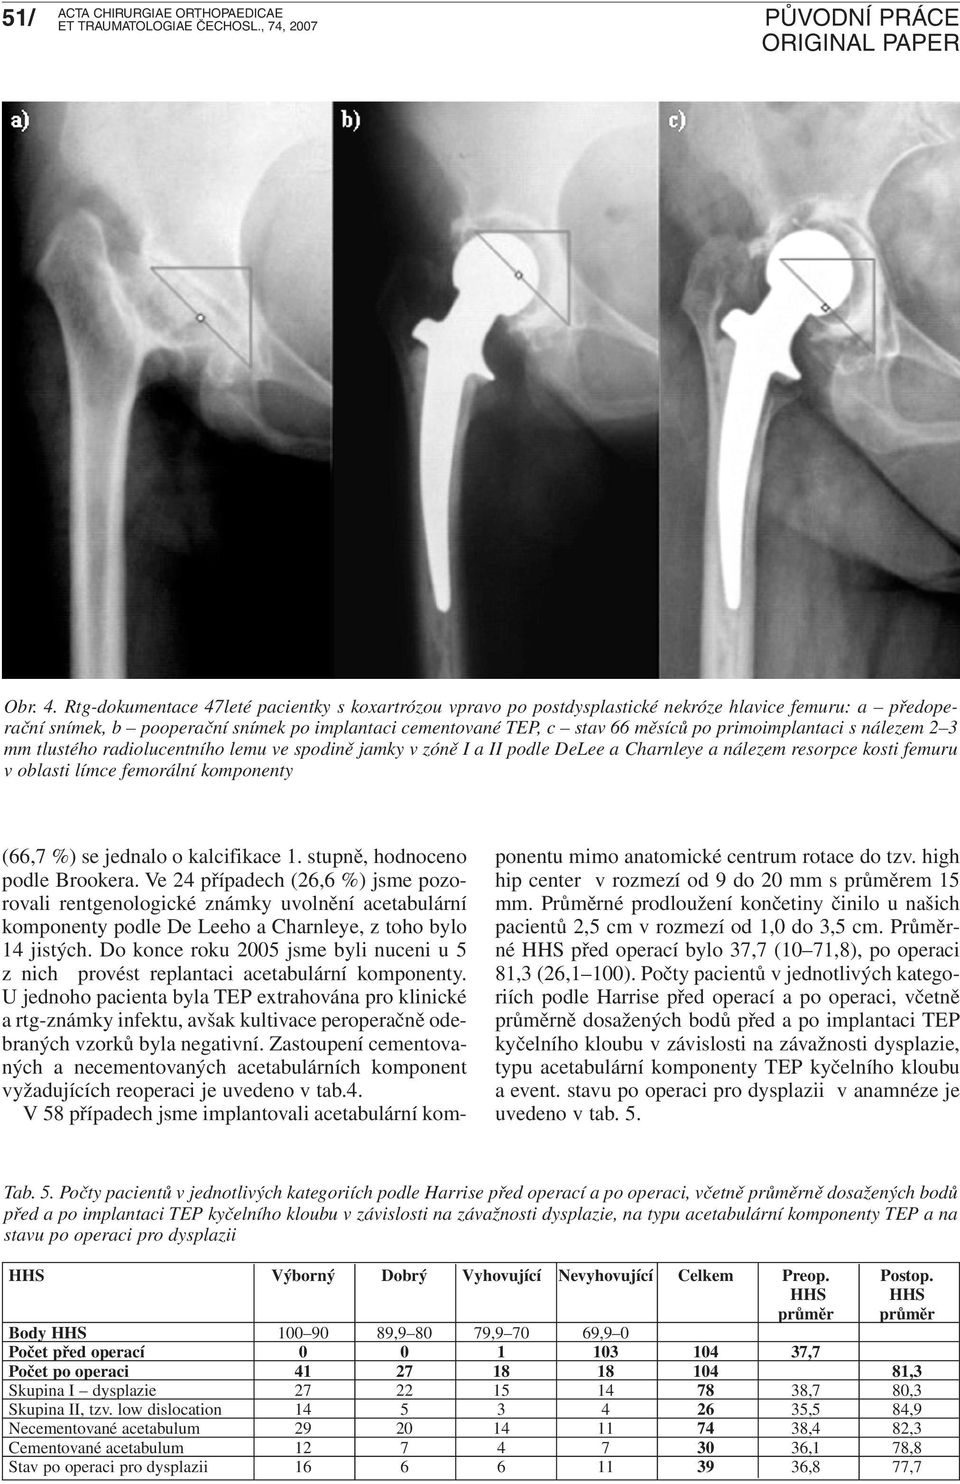 primoimplantaci s nálezem 2 3 mm tlustého radiolucentního lemu ve spodině jamky v zóně I a II podle DeLee a Charnleye a nálezem resorpce kosti femuru v oblasti límce femorální komponenty (66,7 %) se